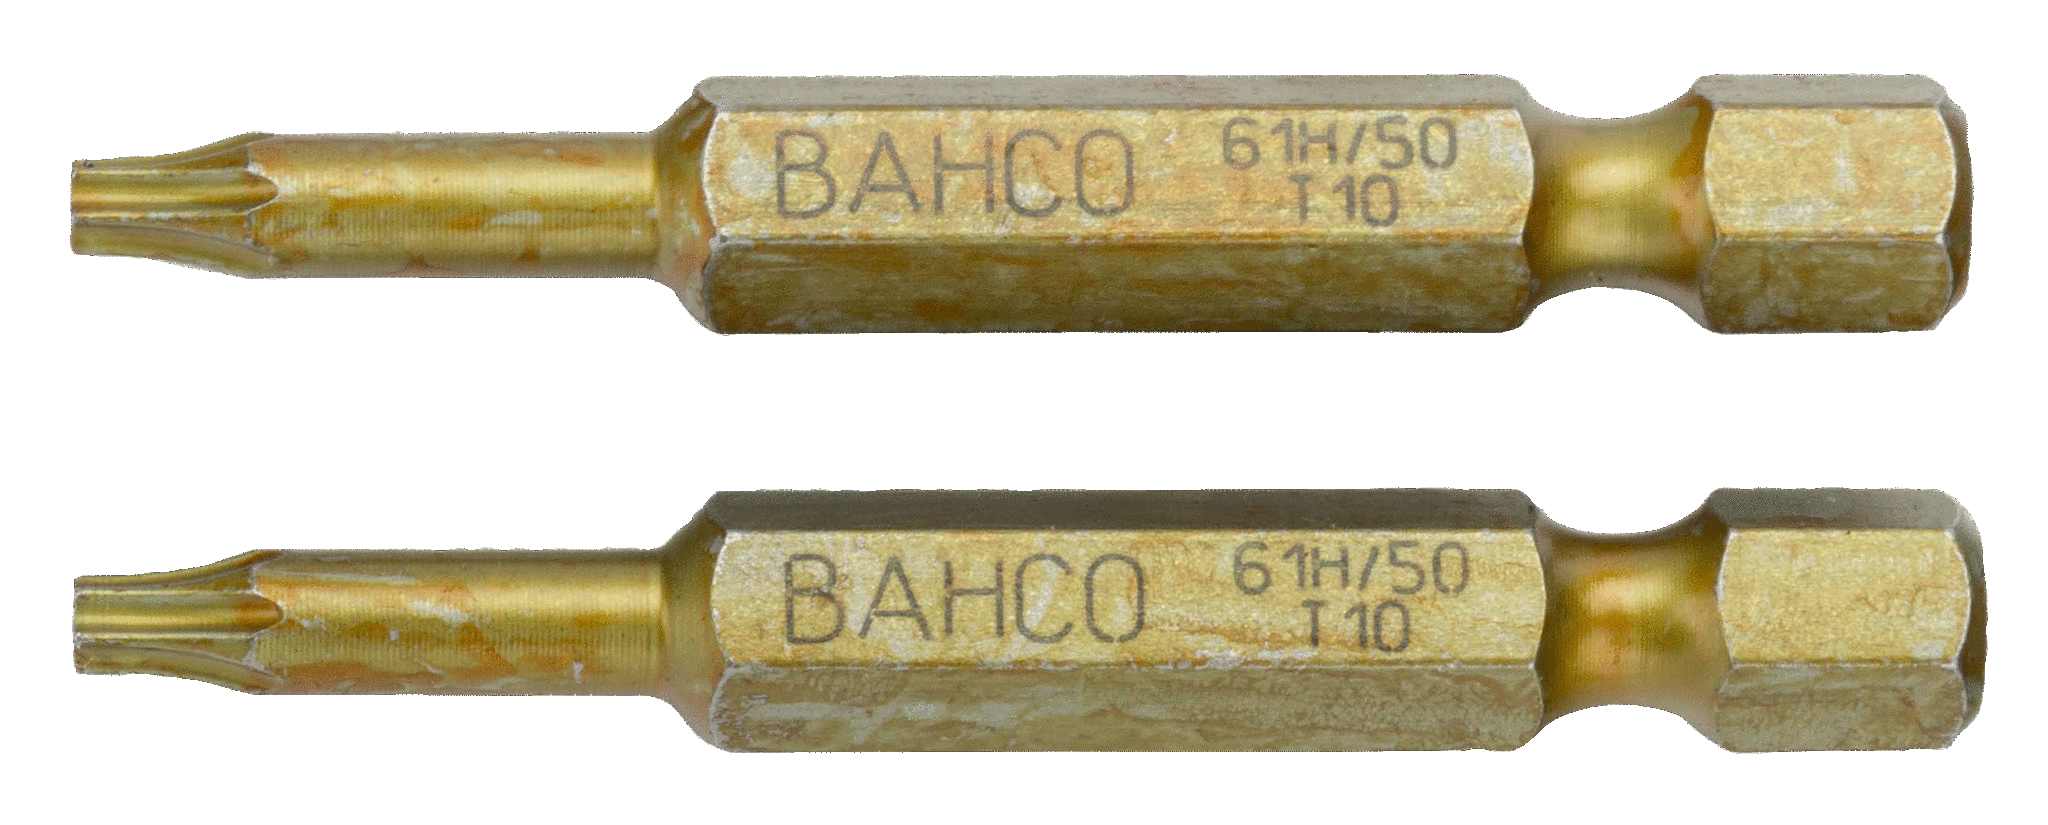 картинка Особо прочные торсионные биты для отверток Torx®, 50 мм BAHCO 61H/50T20 от магазина "Элит-инструмент"